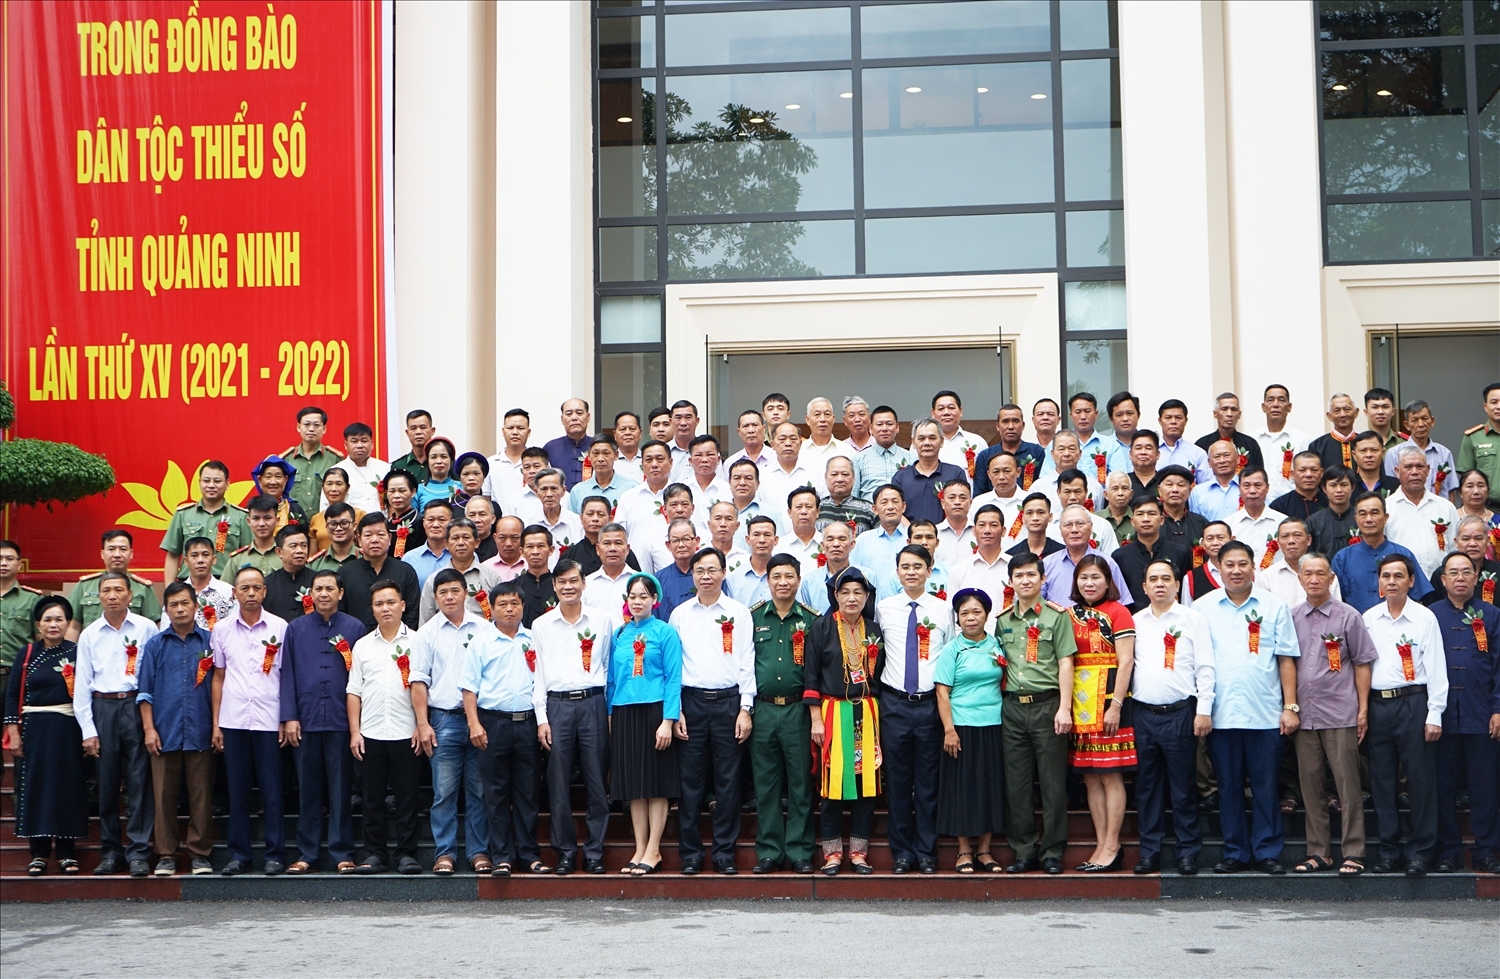 Lãnh đạo Trung ương và tỉnh Quảng Ninh chụp ảnh lưu niệm cùng đại biểu Người có uy tín tại Hội nghị biểu dương Người có uy tín tiêu biểu trong đồng bào DTTS tỉnh Quảng Ninh lần thứ XV (2021 - 2022).